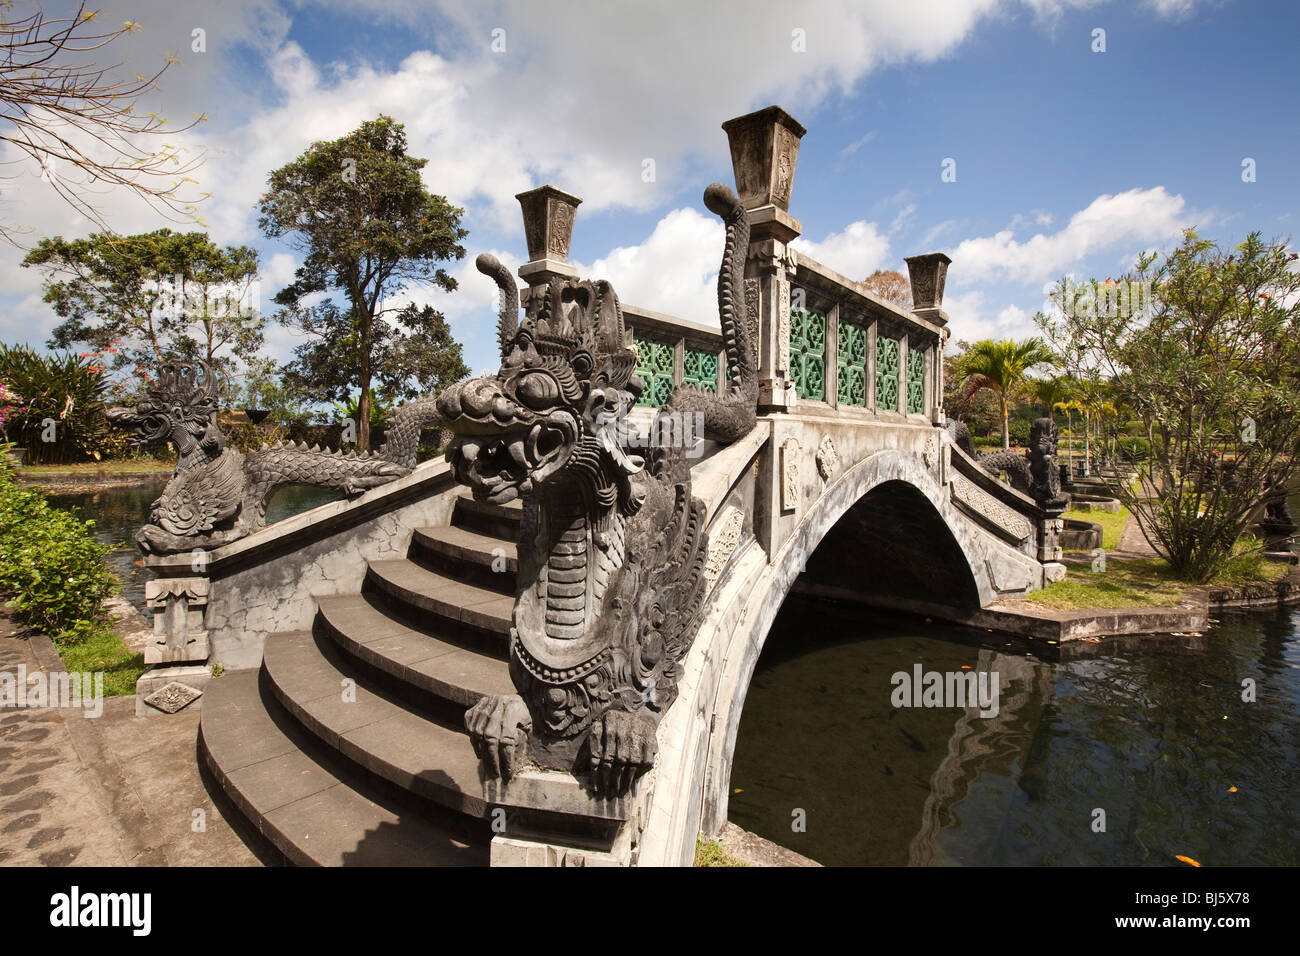 Indonesia, Bali, Tirta Gangga, acqua giardino del palazzo, dragon motif ponte sul laghetto di sud di demon island Foto Stock